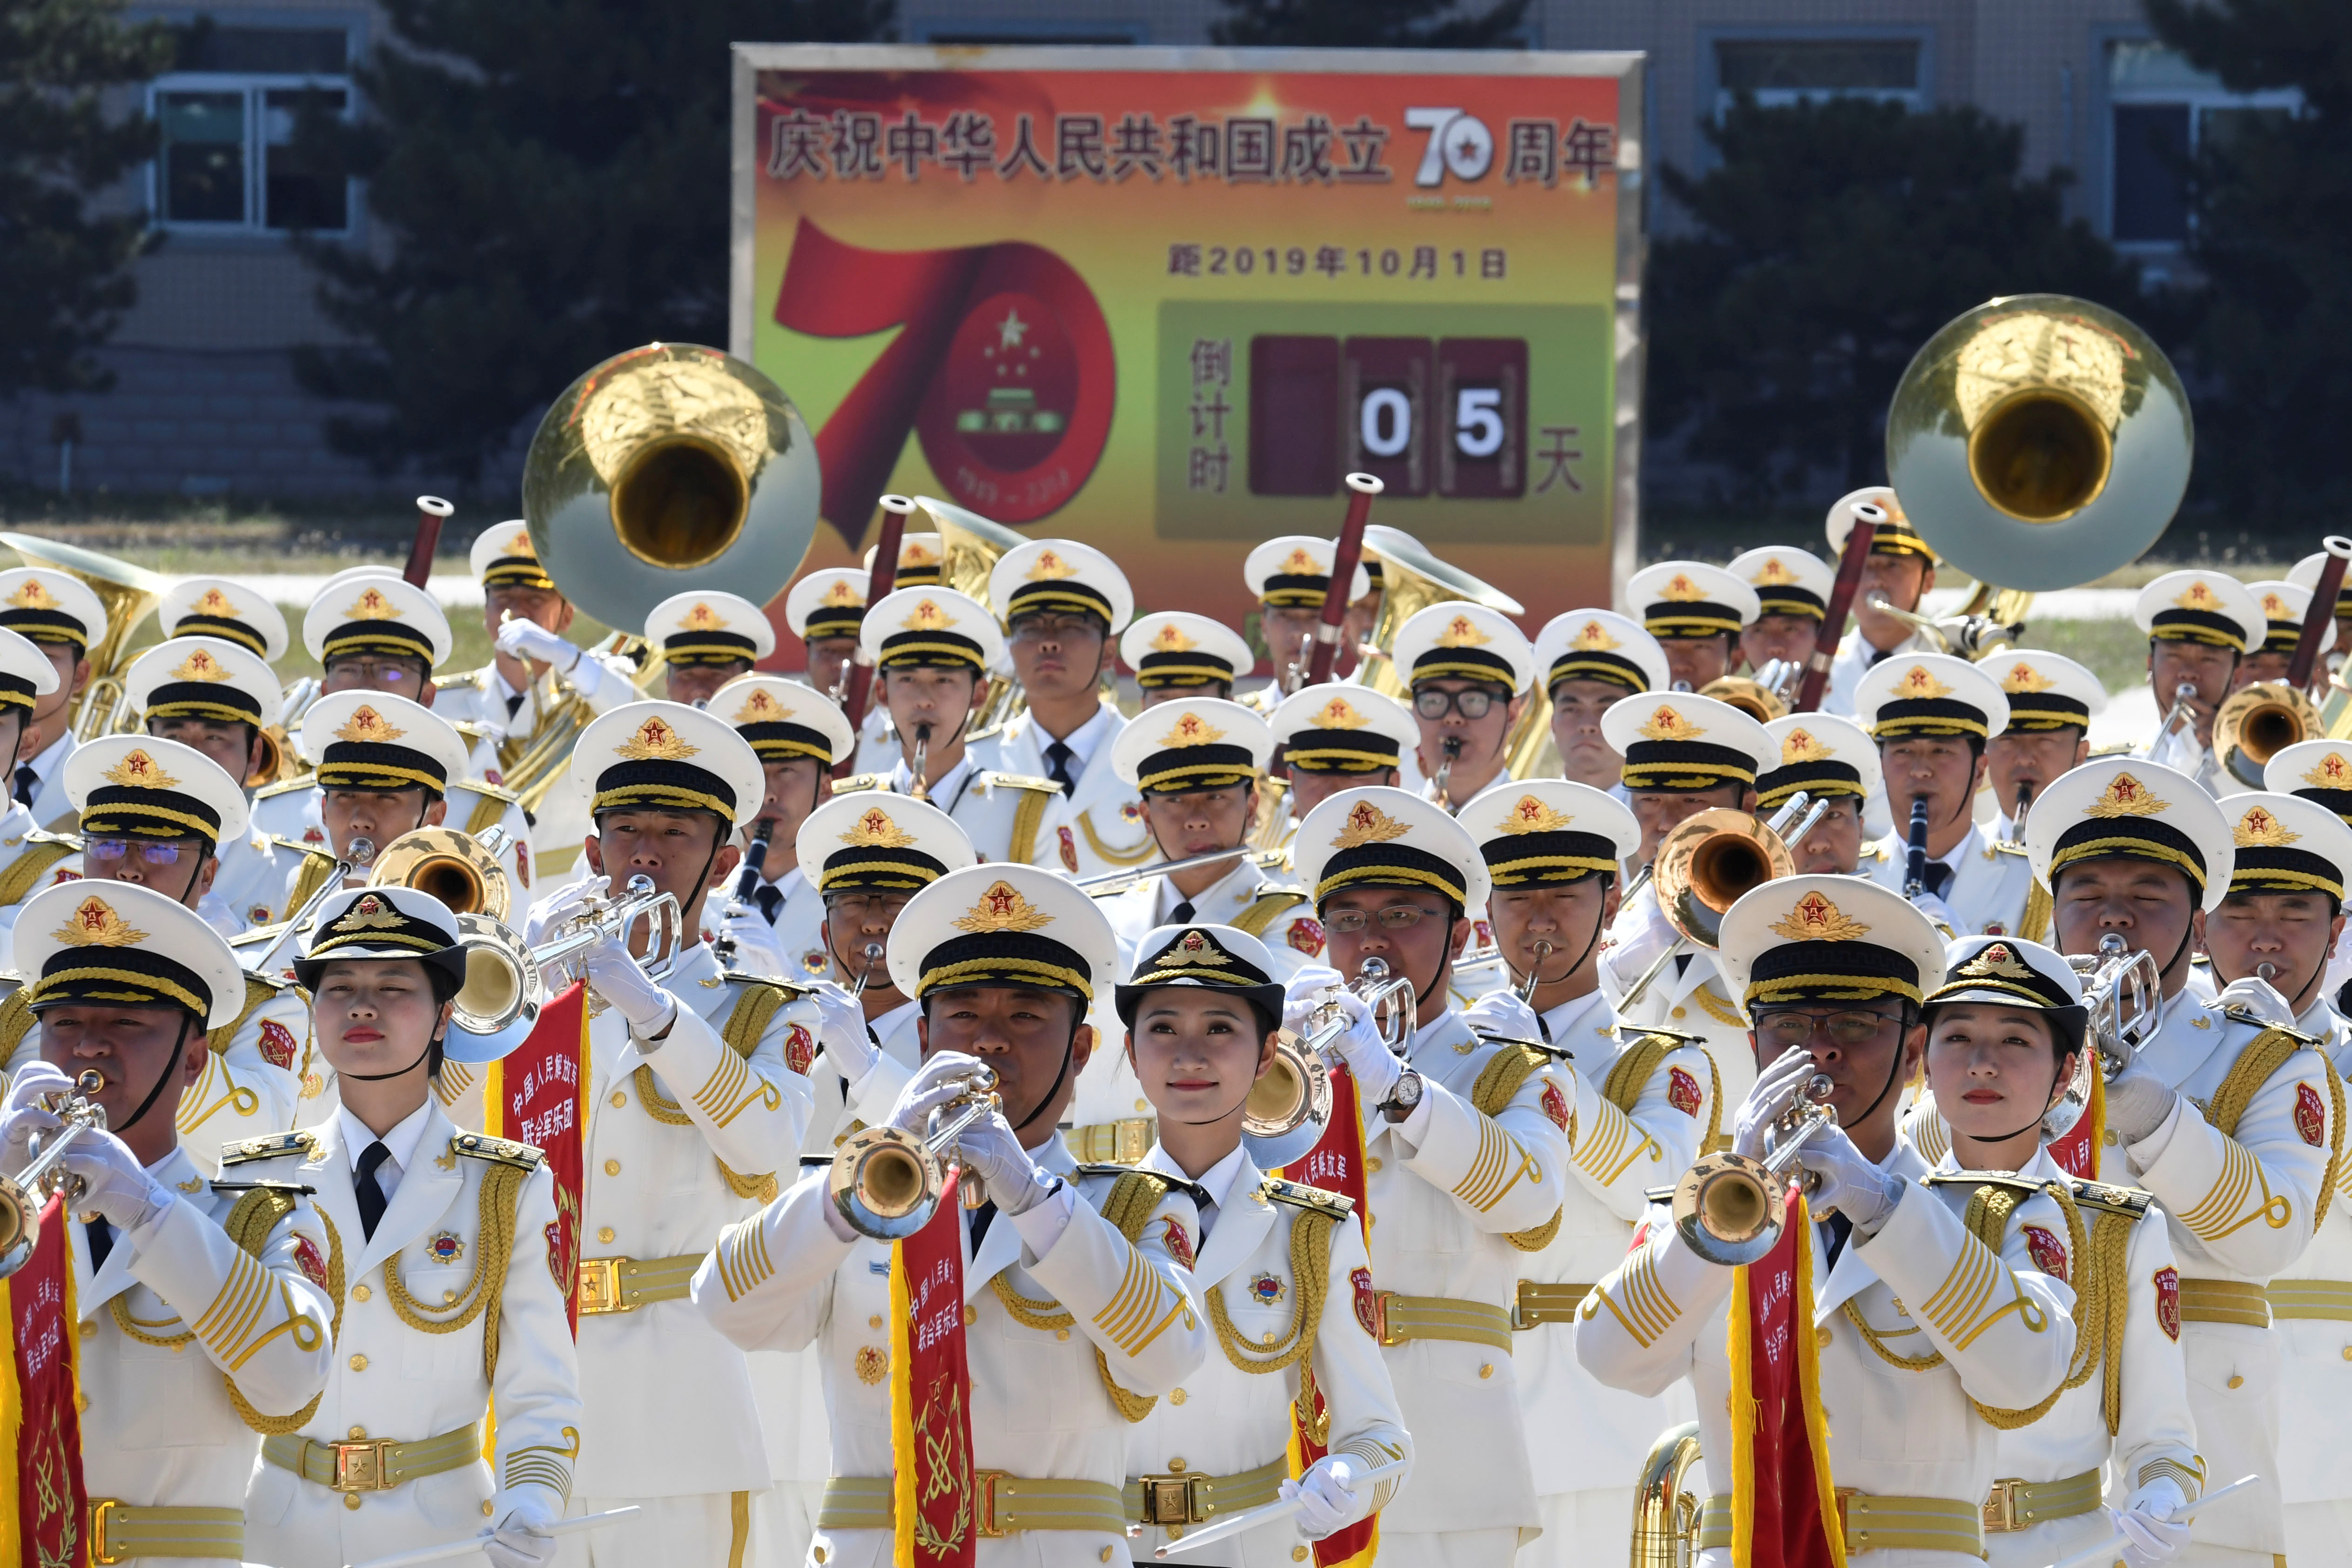 中国即将在10月1日迎来国庆70周年，所有活动包括大型阅兵及群众游行正如火如荼彩排。-路透社-